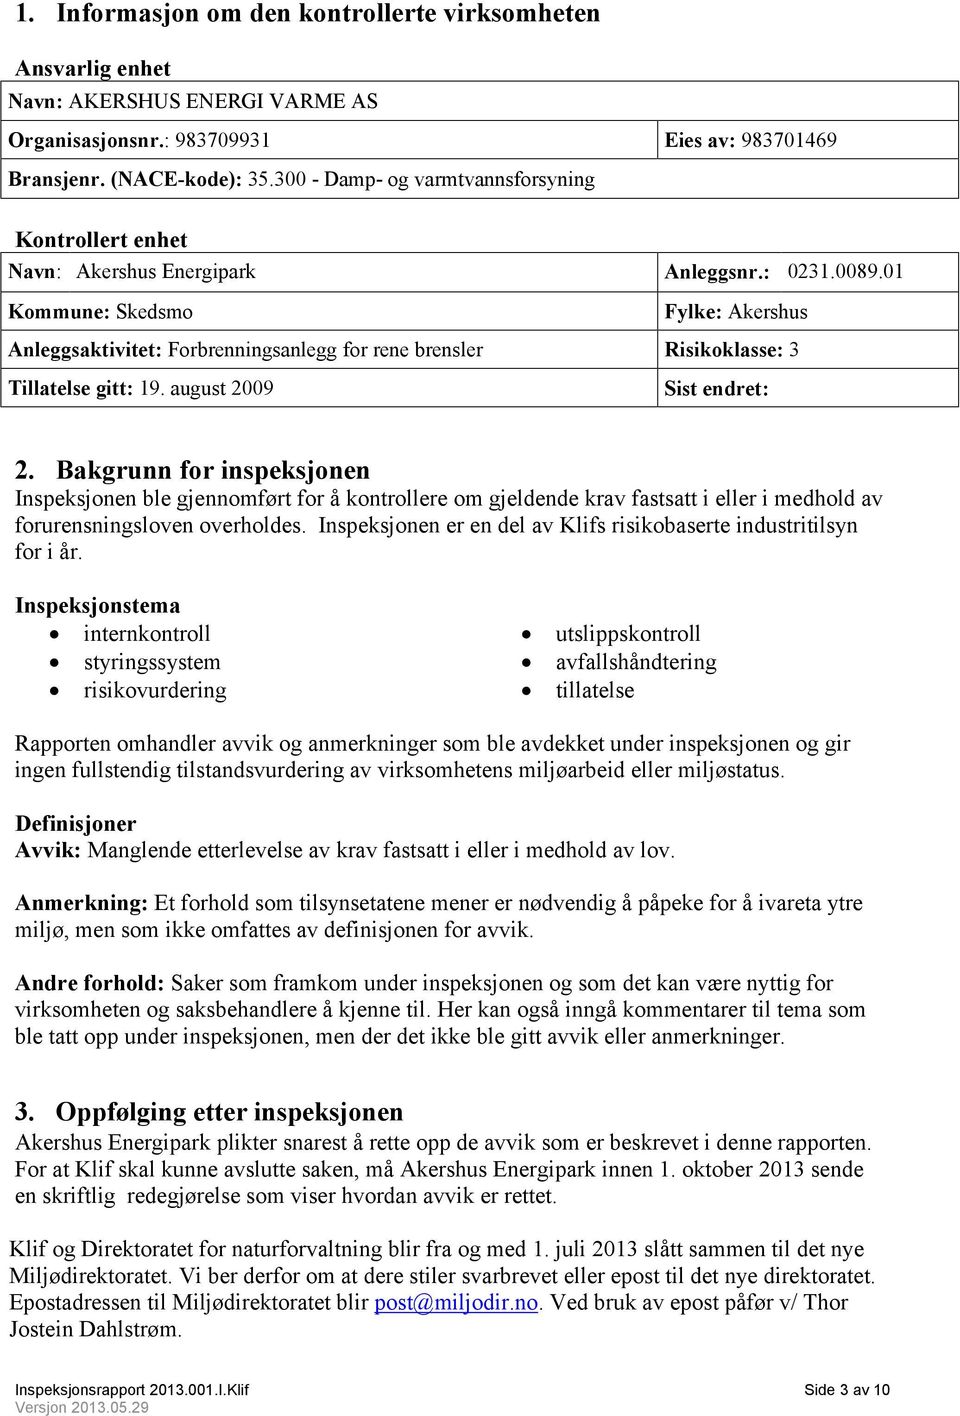 01 Kommune: Skedsmo Fylke: Akershus Anleggsaktivitet: Forbrenningsanlegg for rene brensler Risikoklasse: 3 Tillatelse gitt: 19. august 2009 Sist endret: 2.